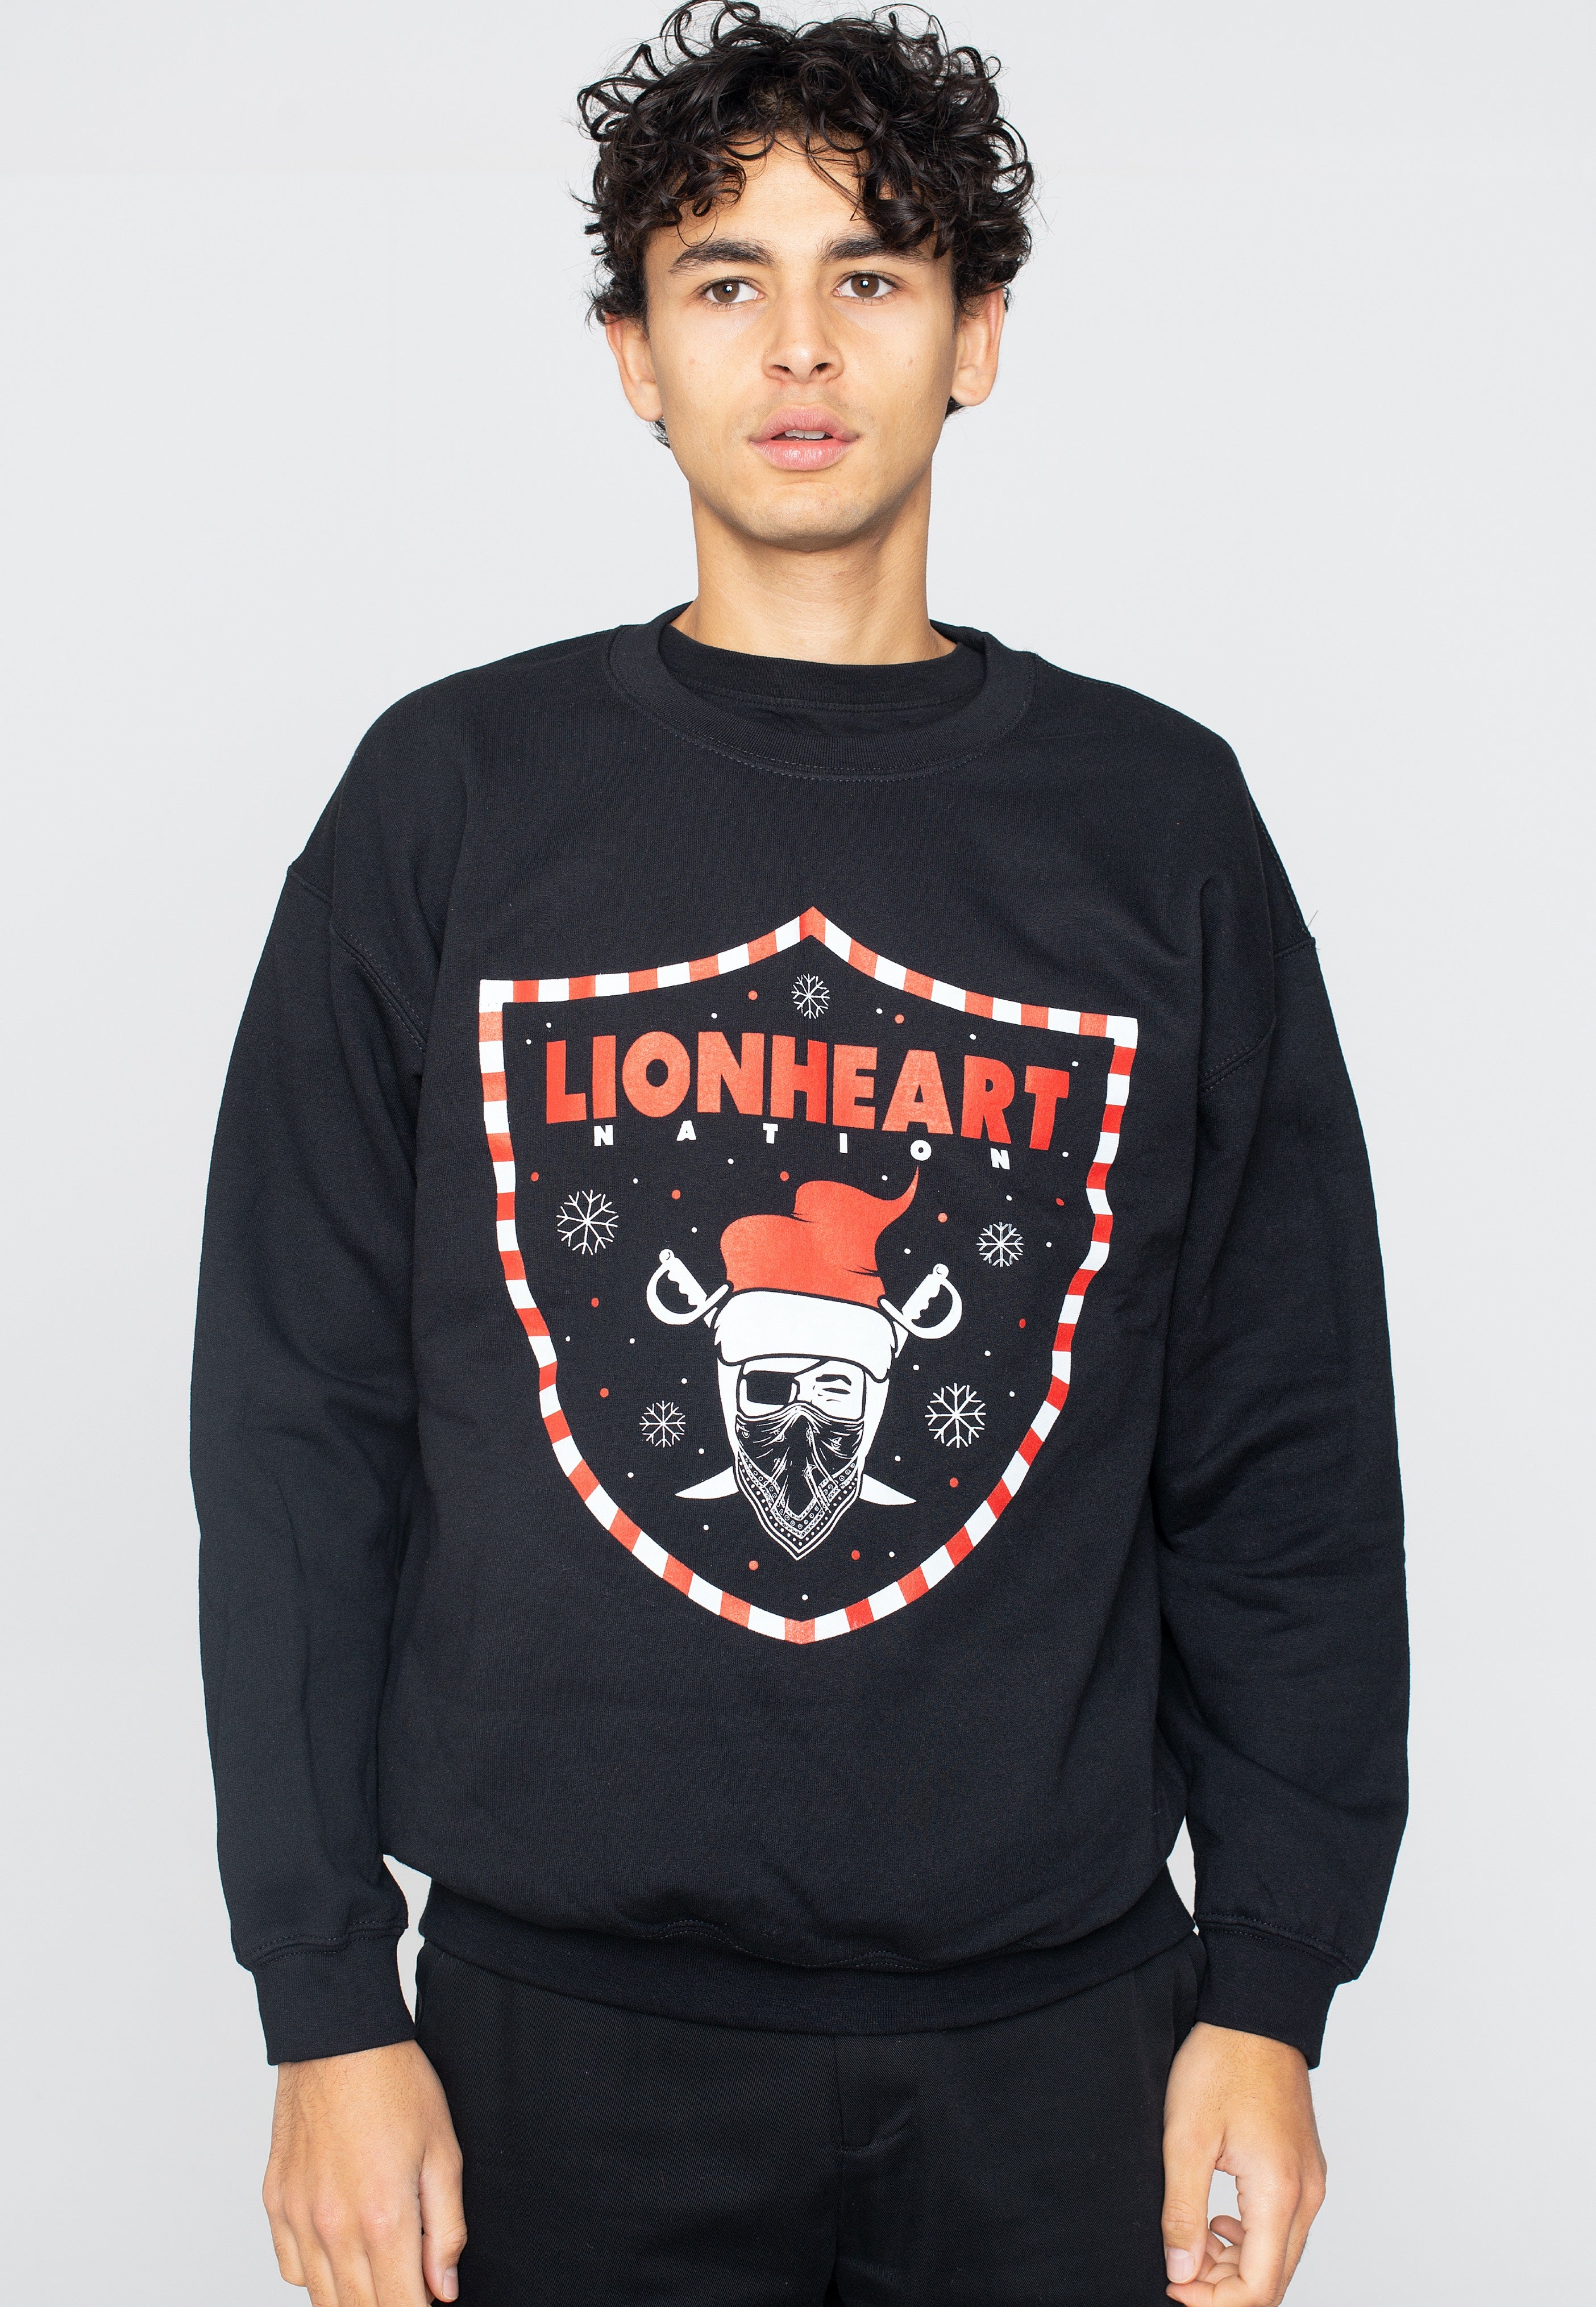 Lionheart - Pom Down XMas - Sweater